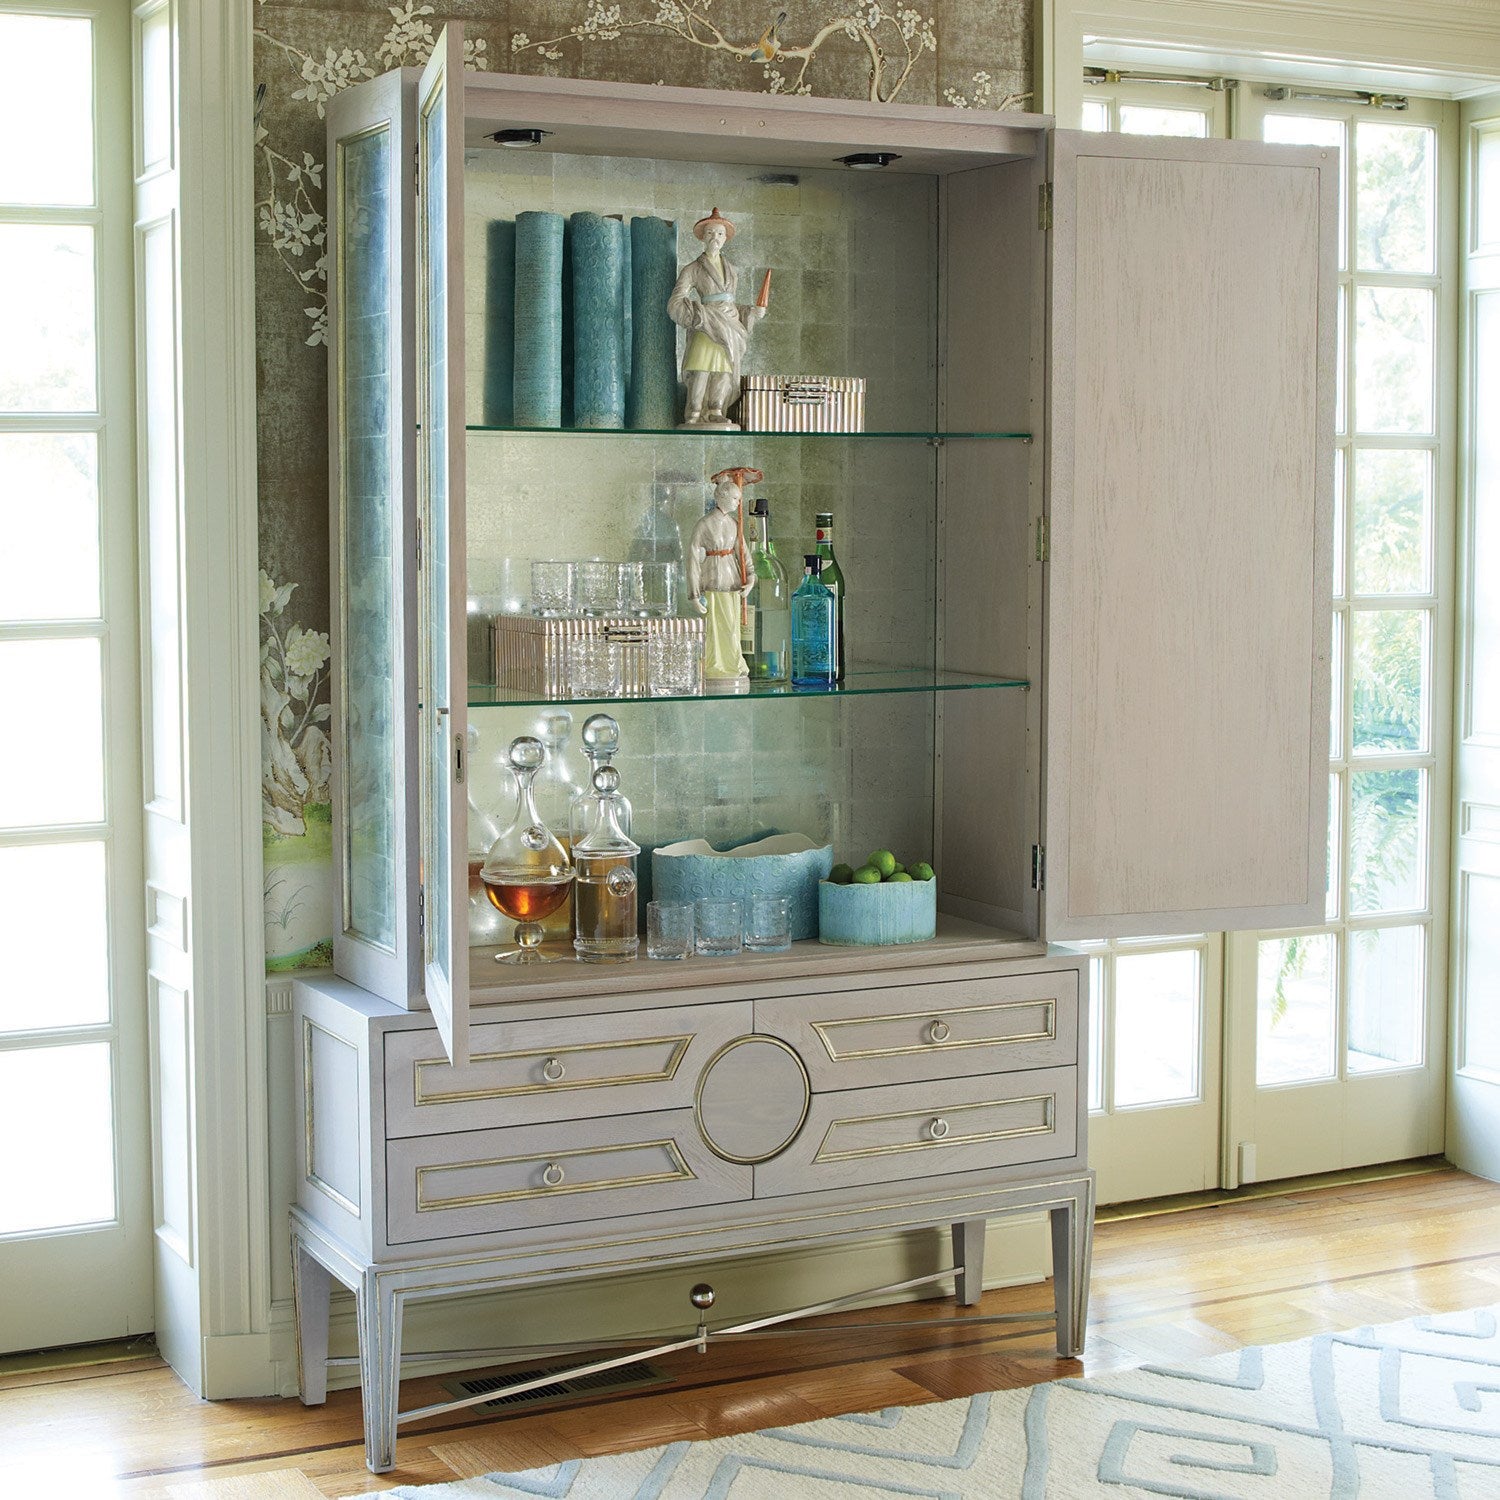 Collectors 56"W x 91"H Cabinet - Grey - Grats Decor Interior Design & Build Inc.